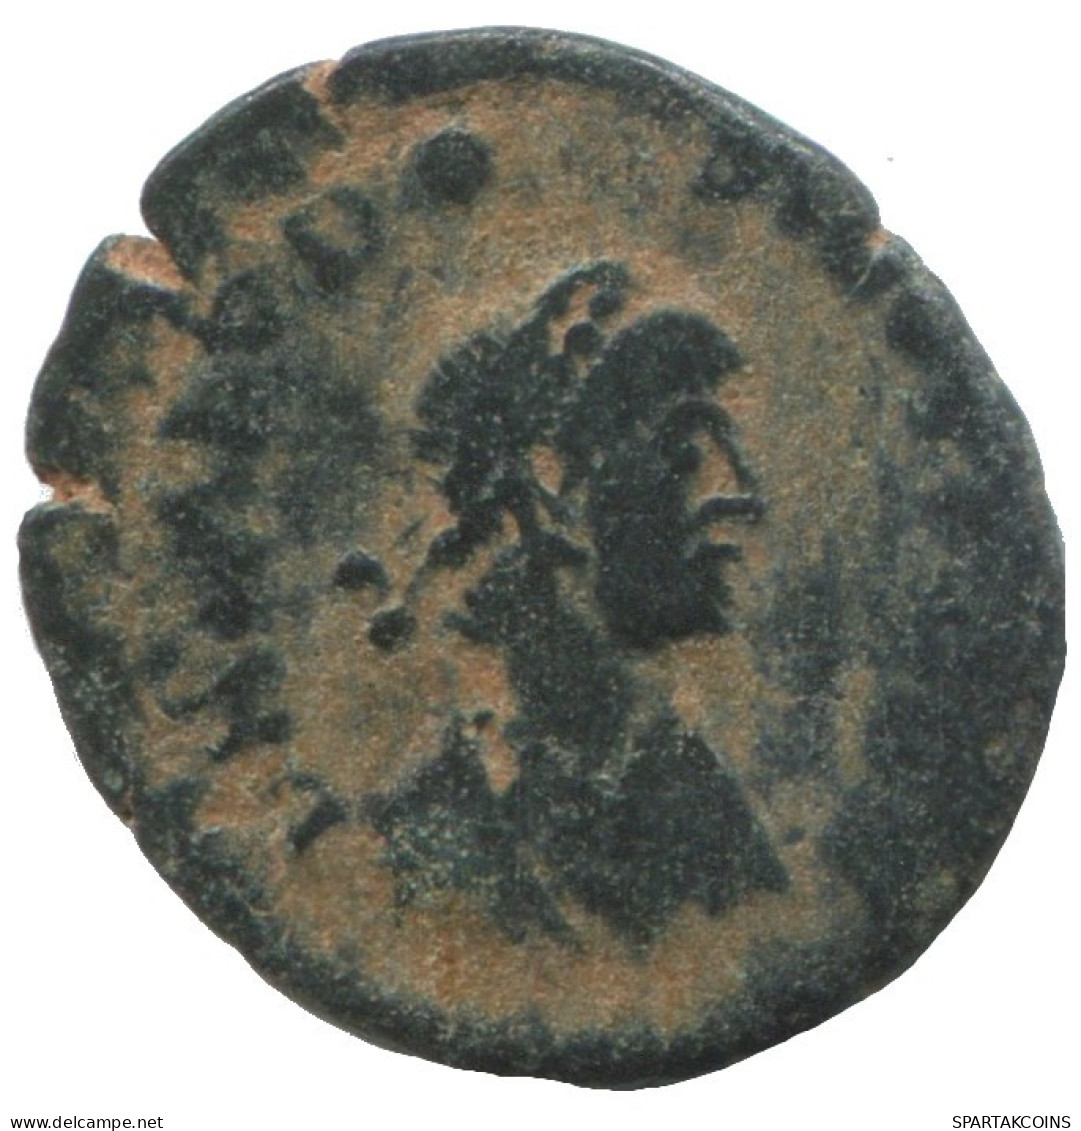 VALENTINIAN II CYZICUS AD375-392 SALVS REI-PVBLICAE 1.2g/15mm #ANN1321.9.F.A - El Bajo Imperio Romano (363 / 476)